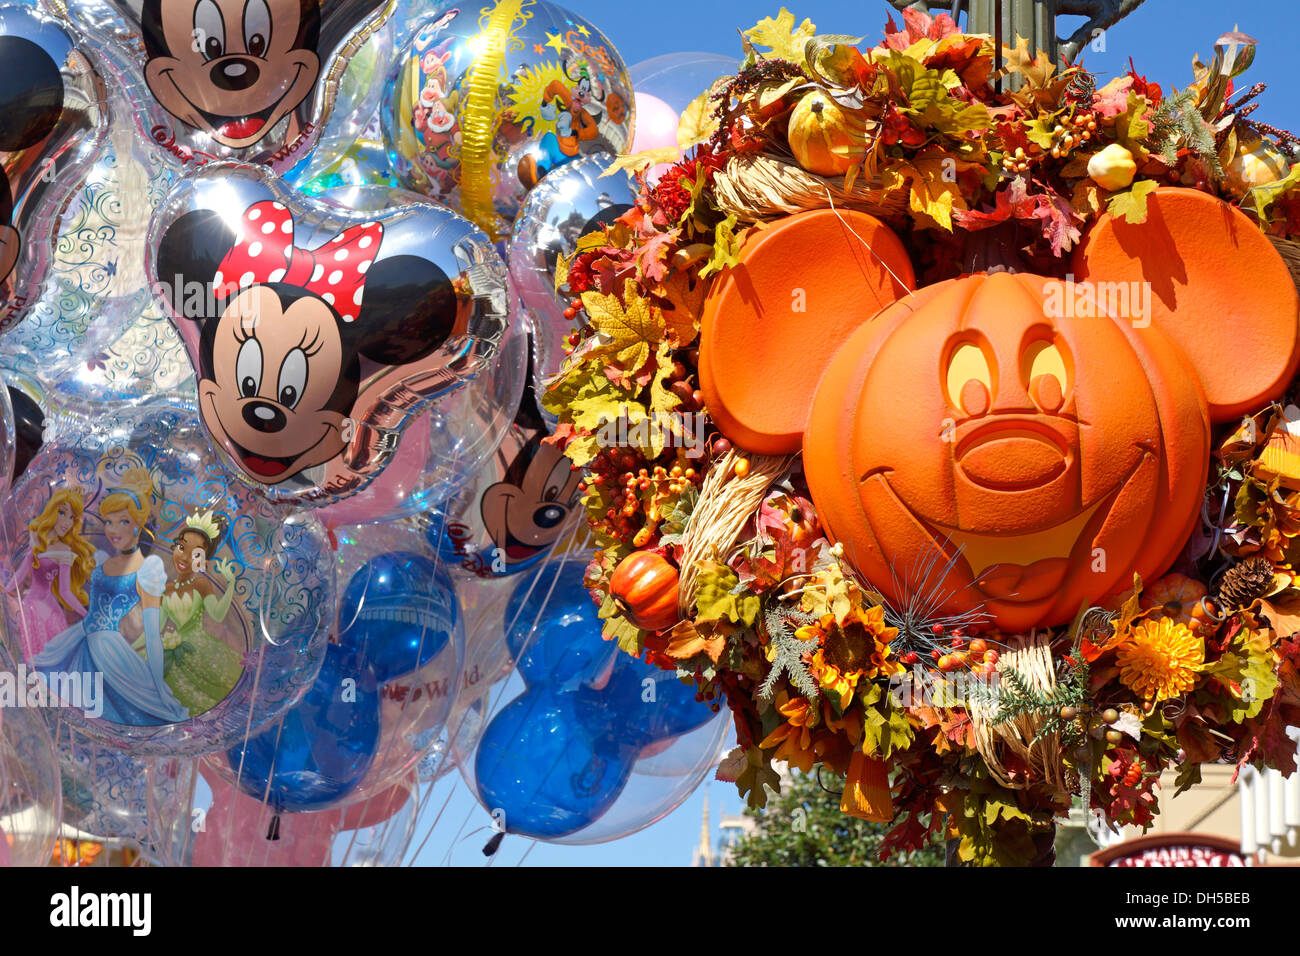 Halloween im Disney World Resort, Luftballons Dekorationen Kürbis geschnitzt in Form von Mickey Mouse Gesicht, Orlando Florida Stockfoto